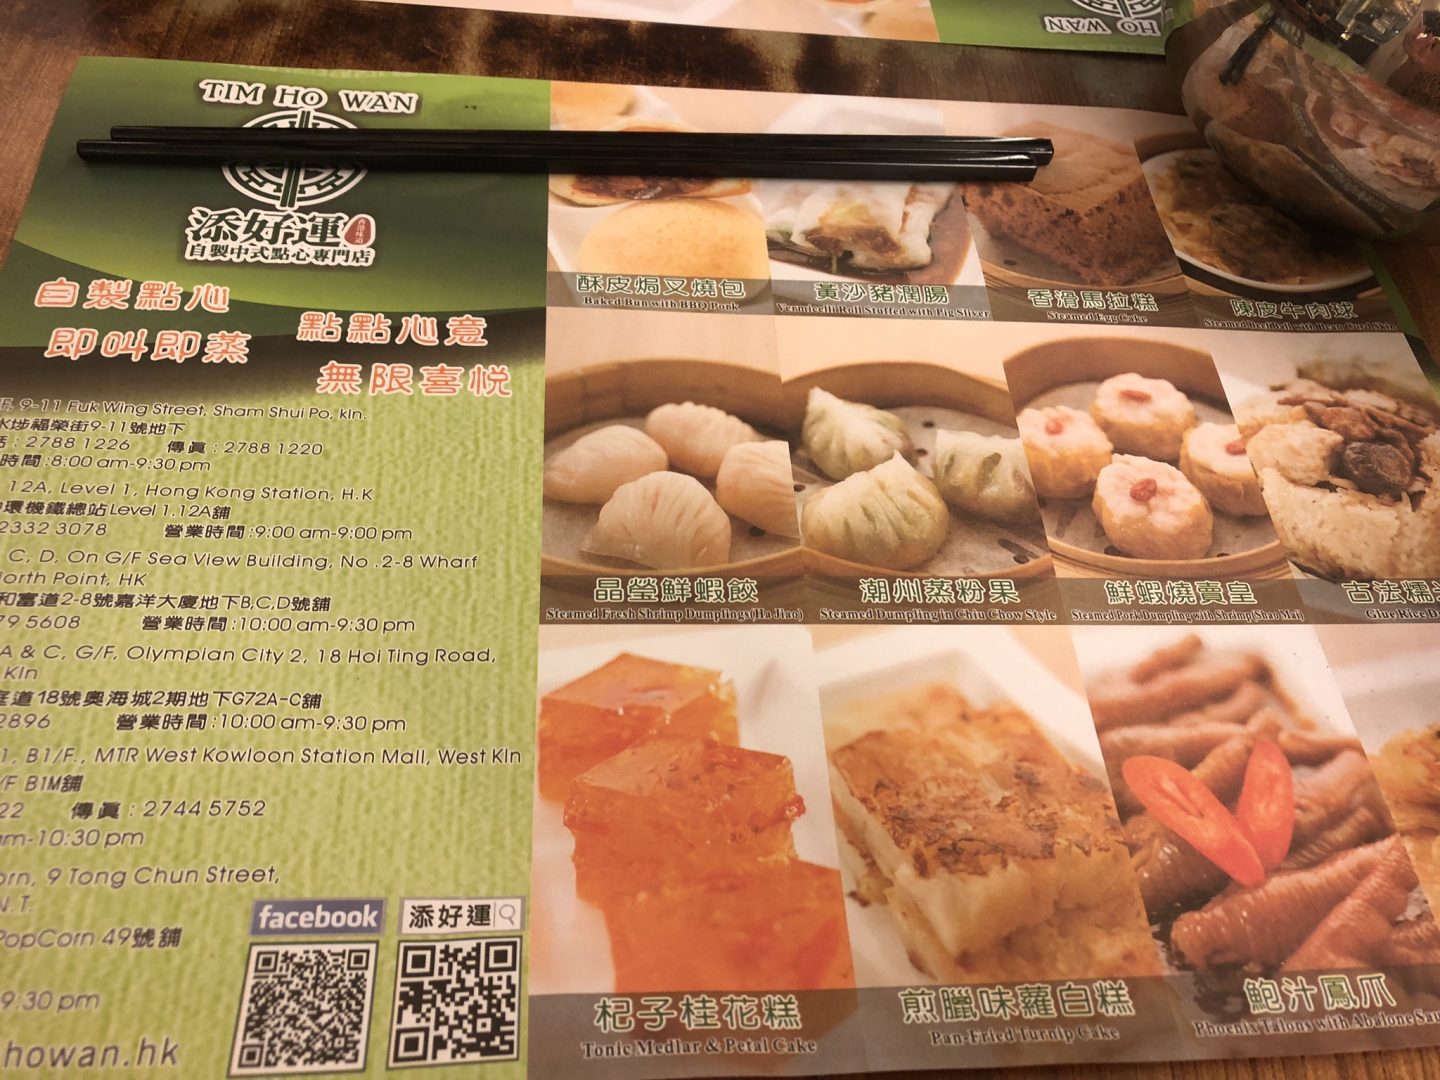 Tim Ho Wan menu, Hong Kong